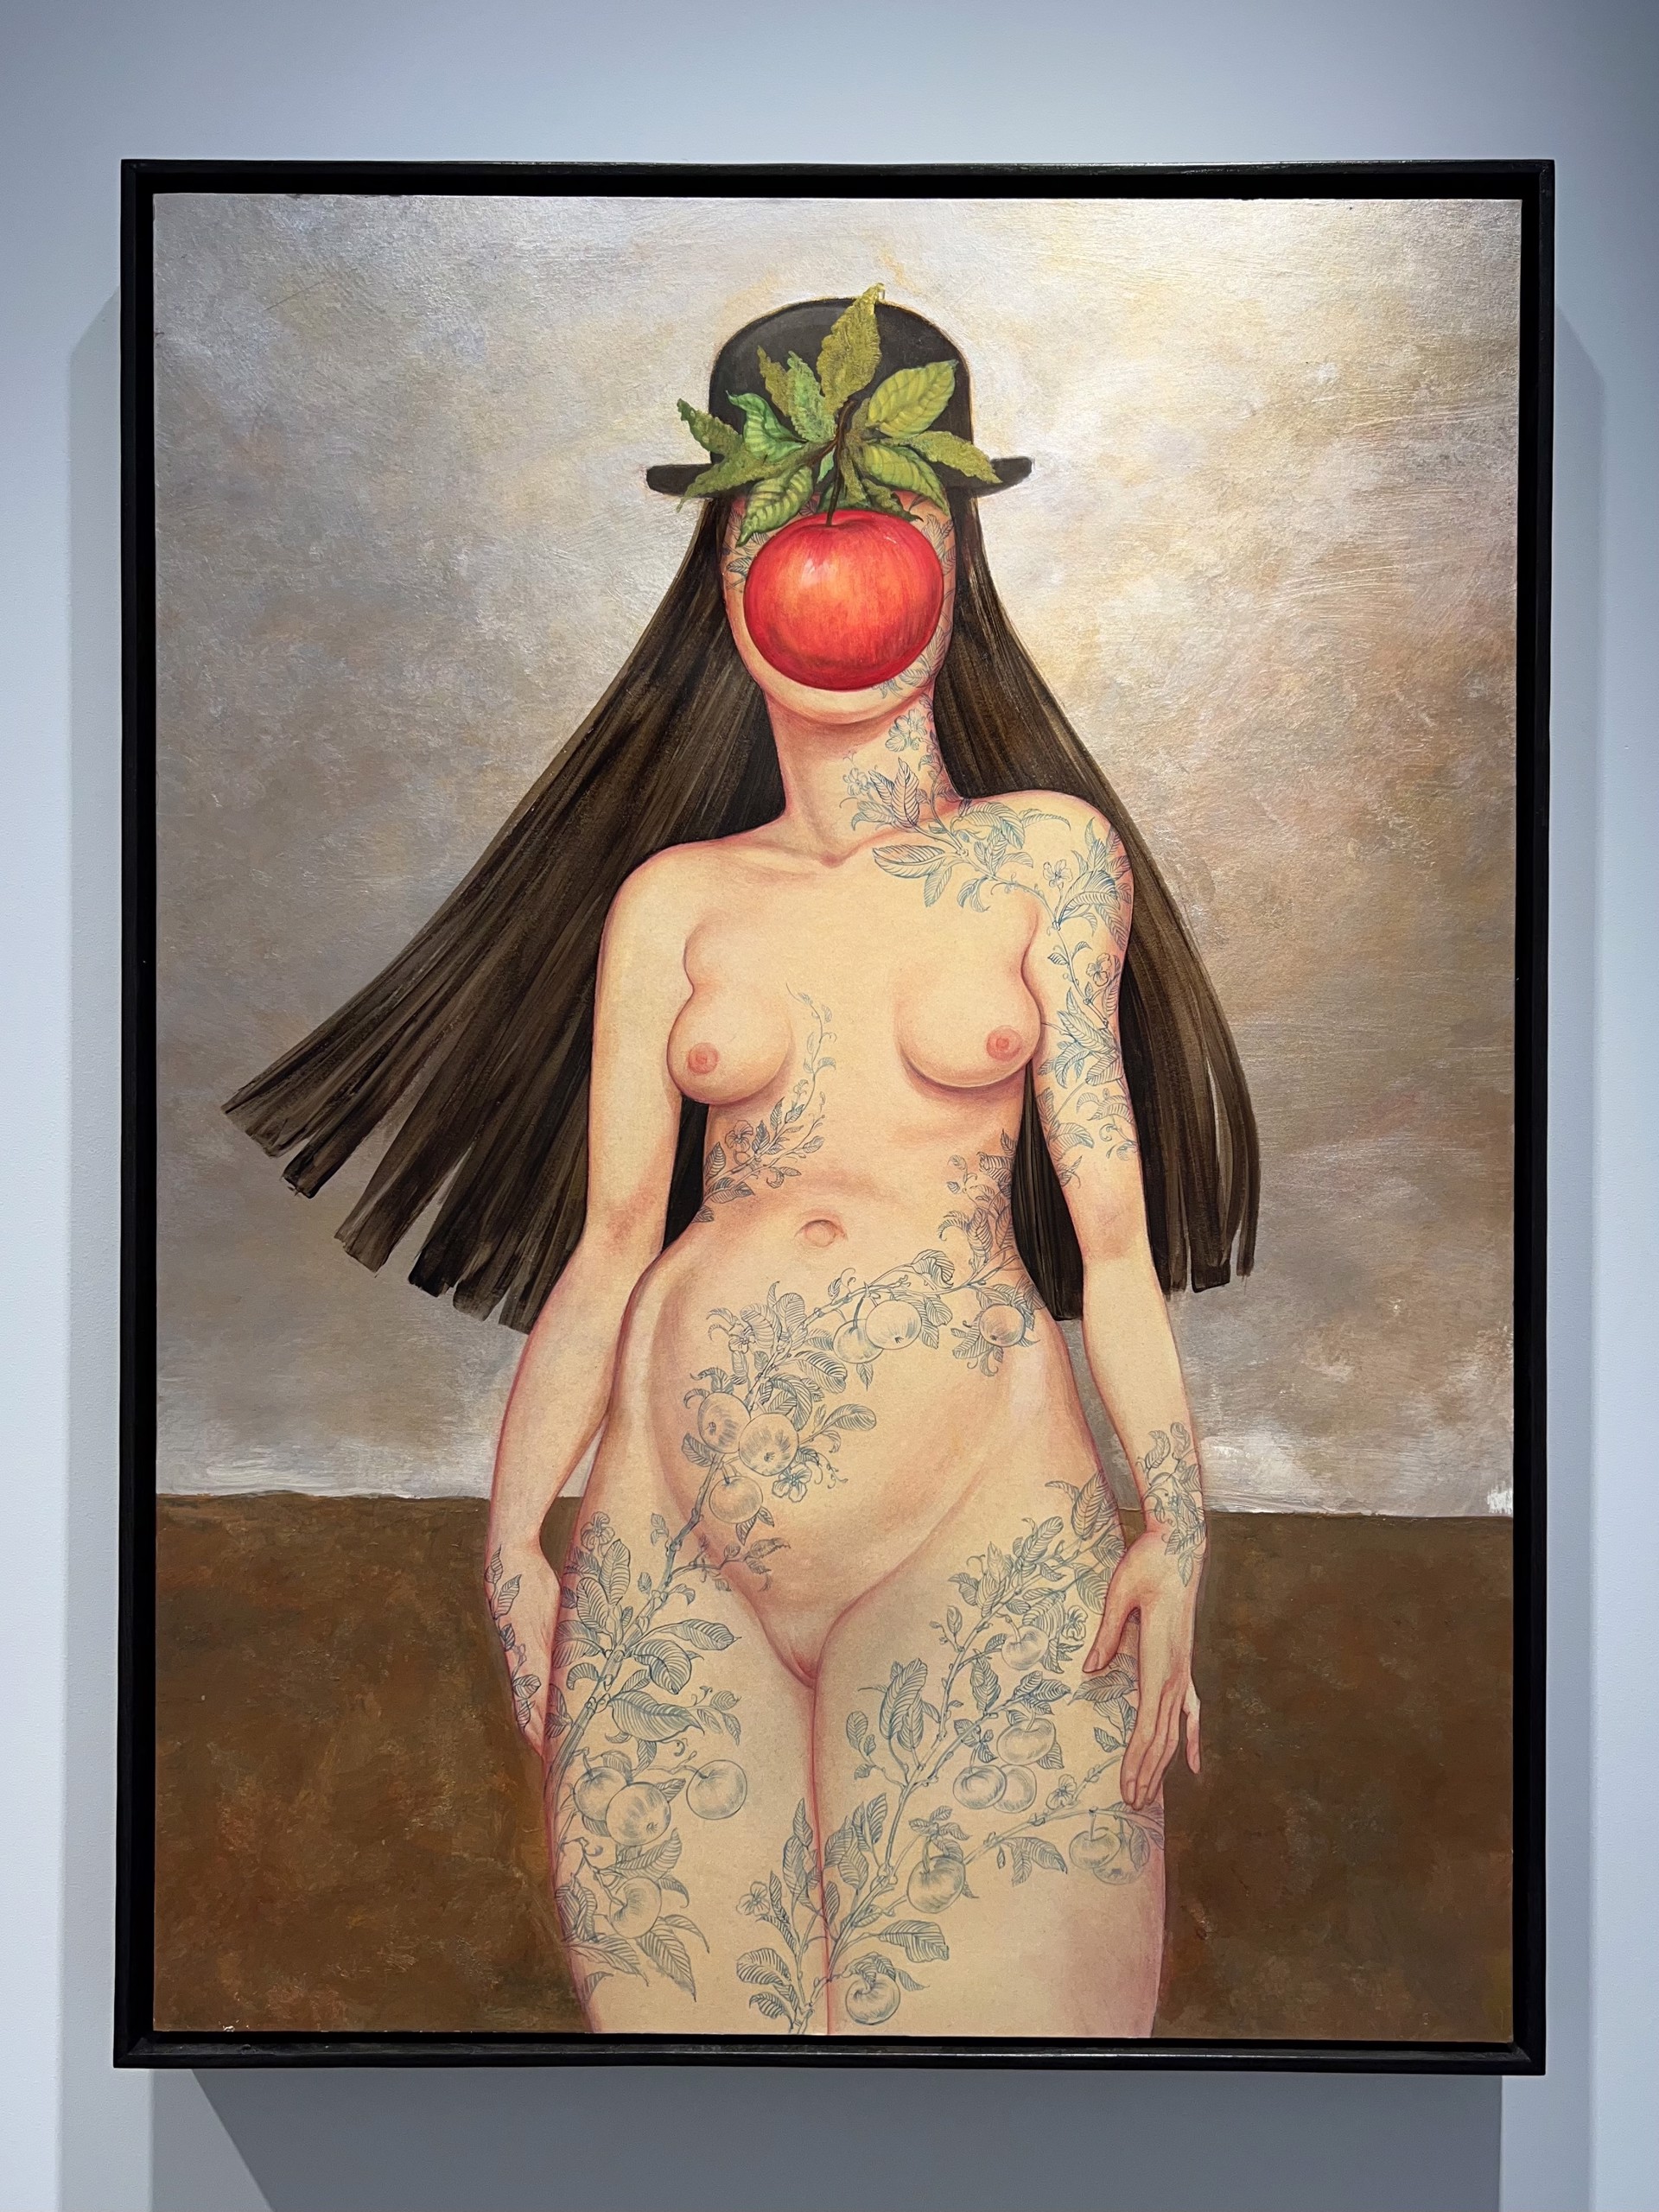 Reneé Magritte, Daughter of Man by Anita Kunz